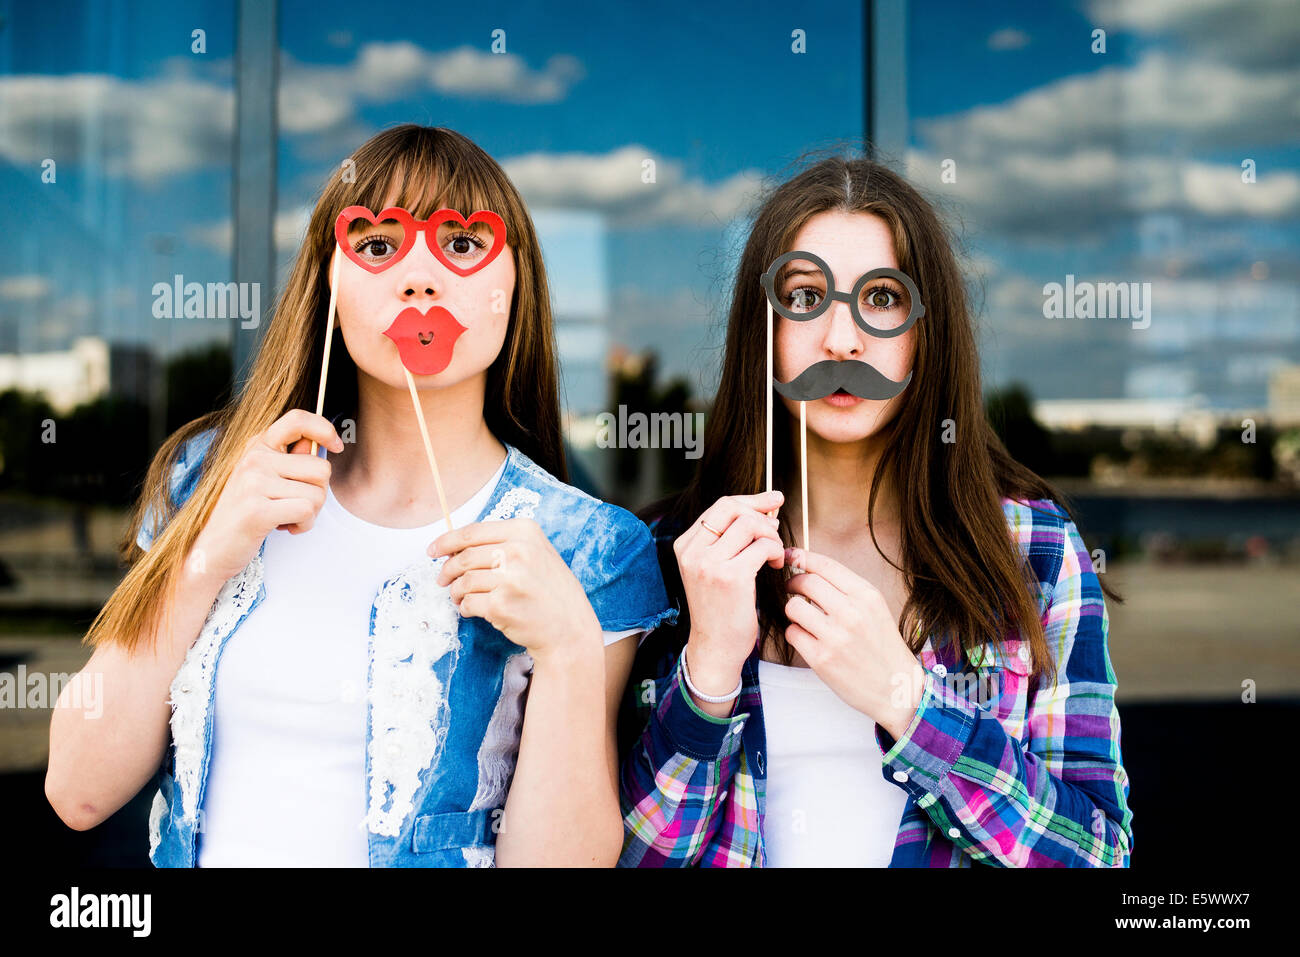 Porträt zweier junger Frauen, Lippen- und Augenpflege Kostüm Masken hochhalten Stockfoto